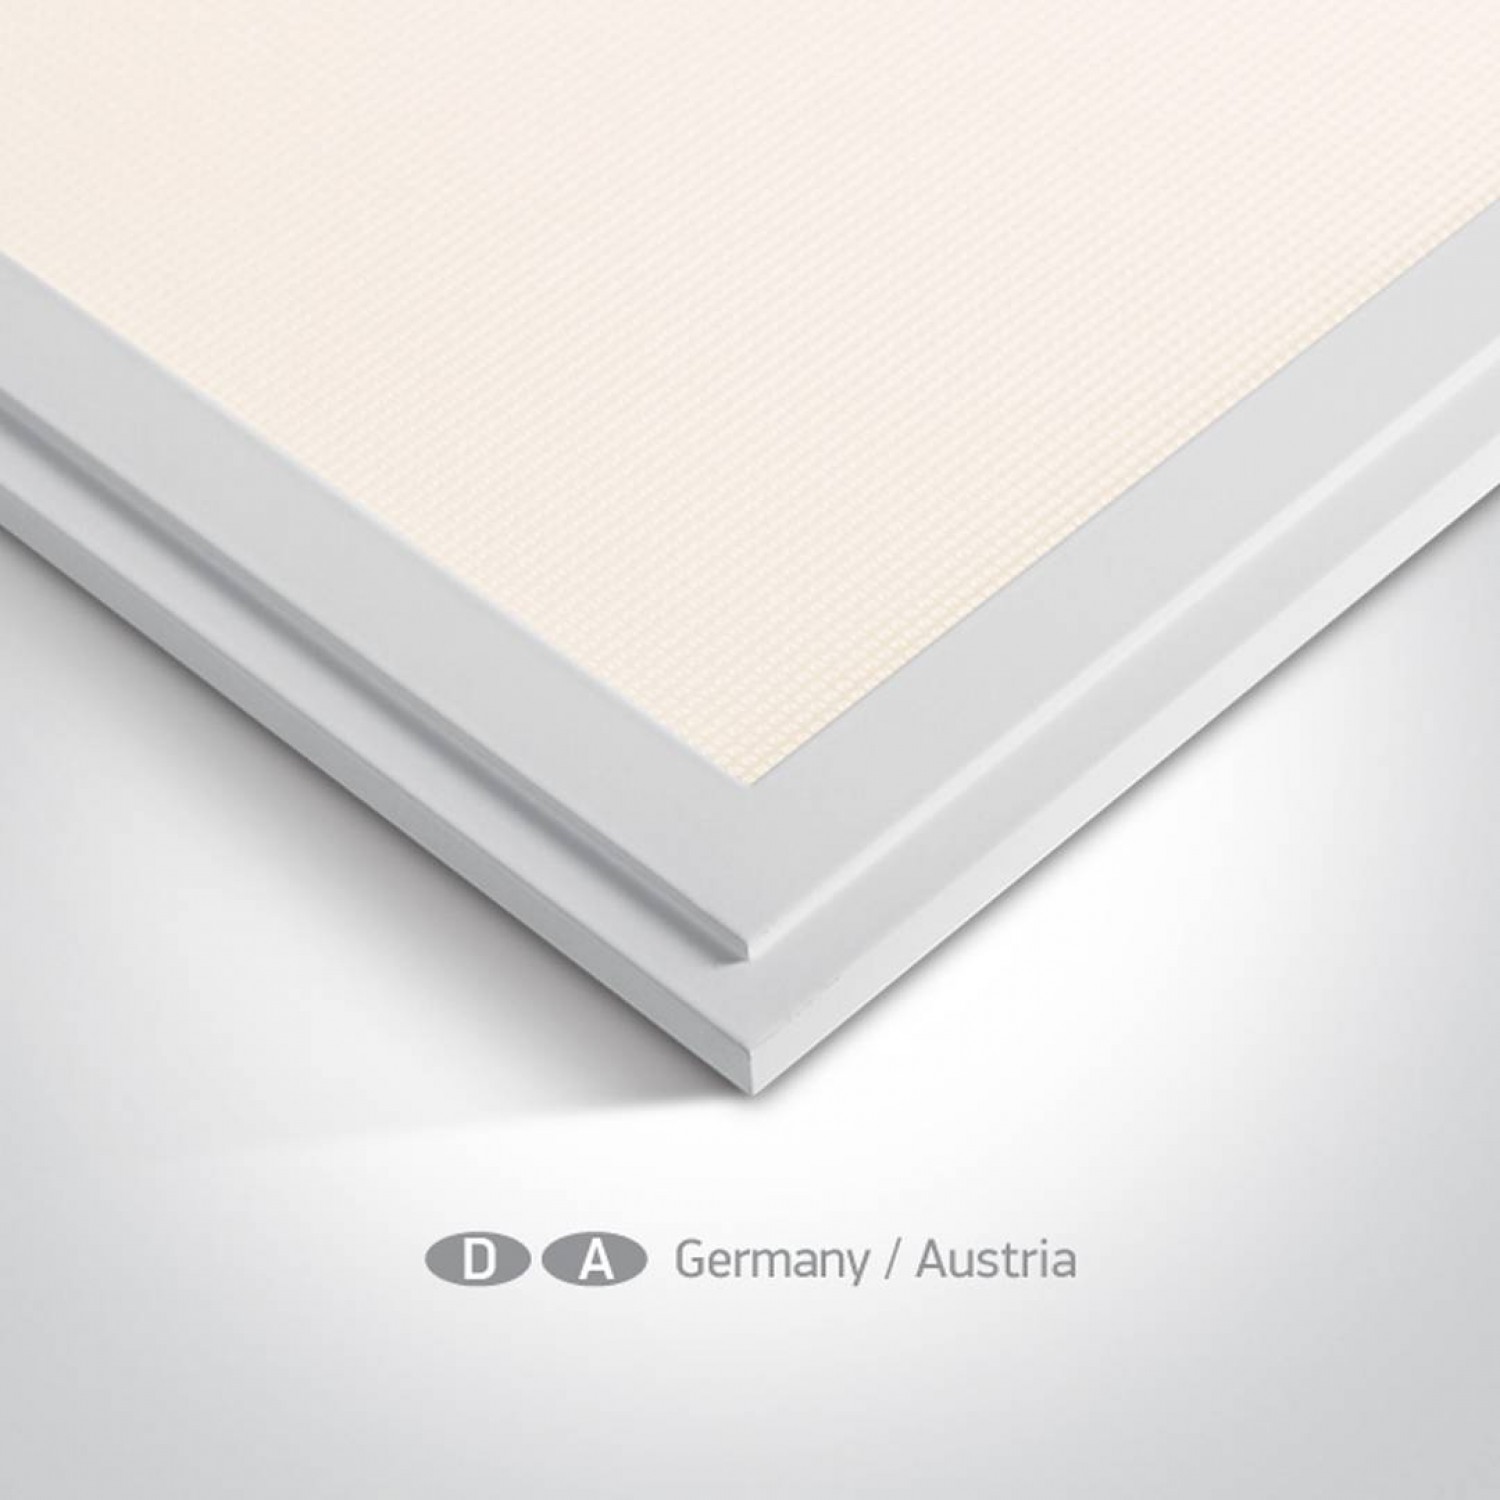 alt_image Армстронг ONE Light Panels For Germany/Austria 50148AU/W/W